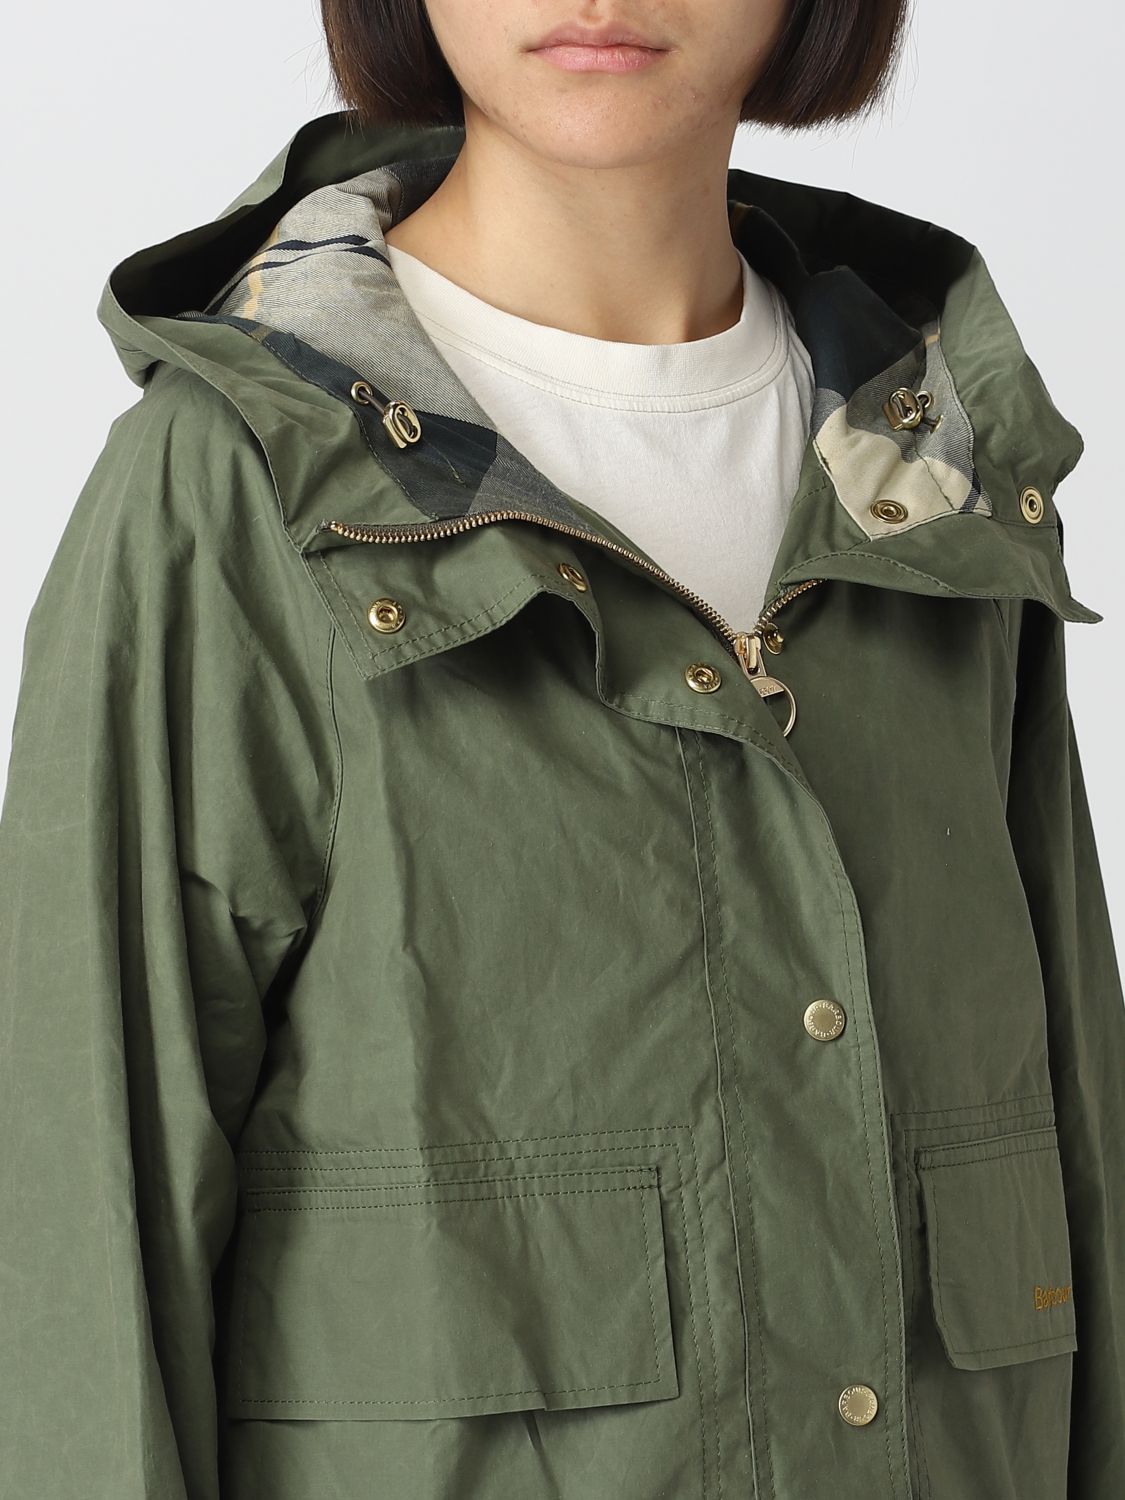 Pikken interieur Maak een naam BARBOUR: jacket for woman - Military | Barbour jacket LSP0090 online on  GIGLIO.COM